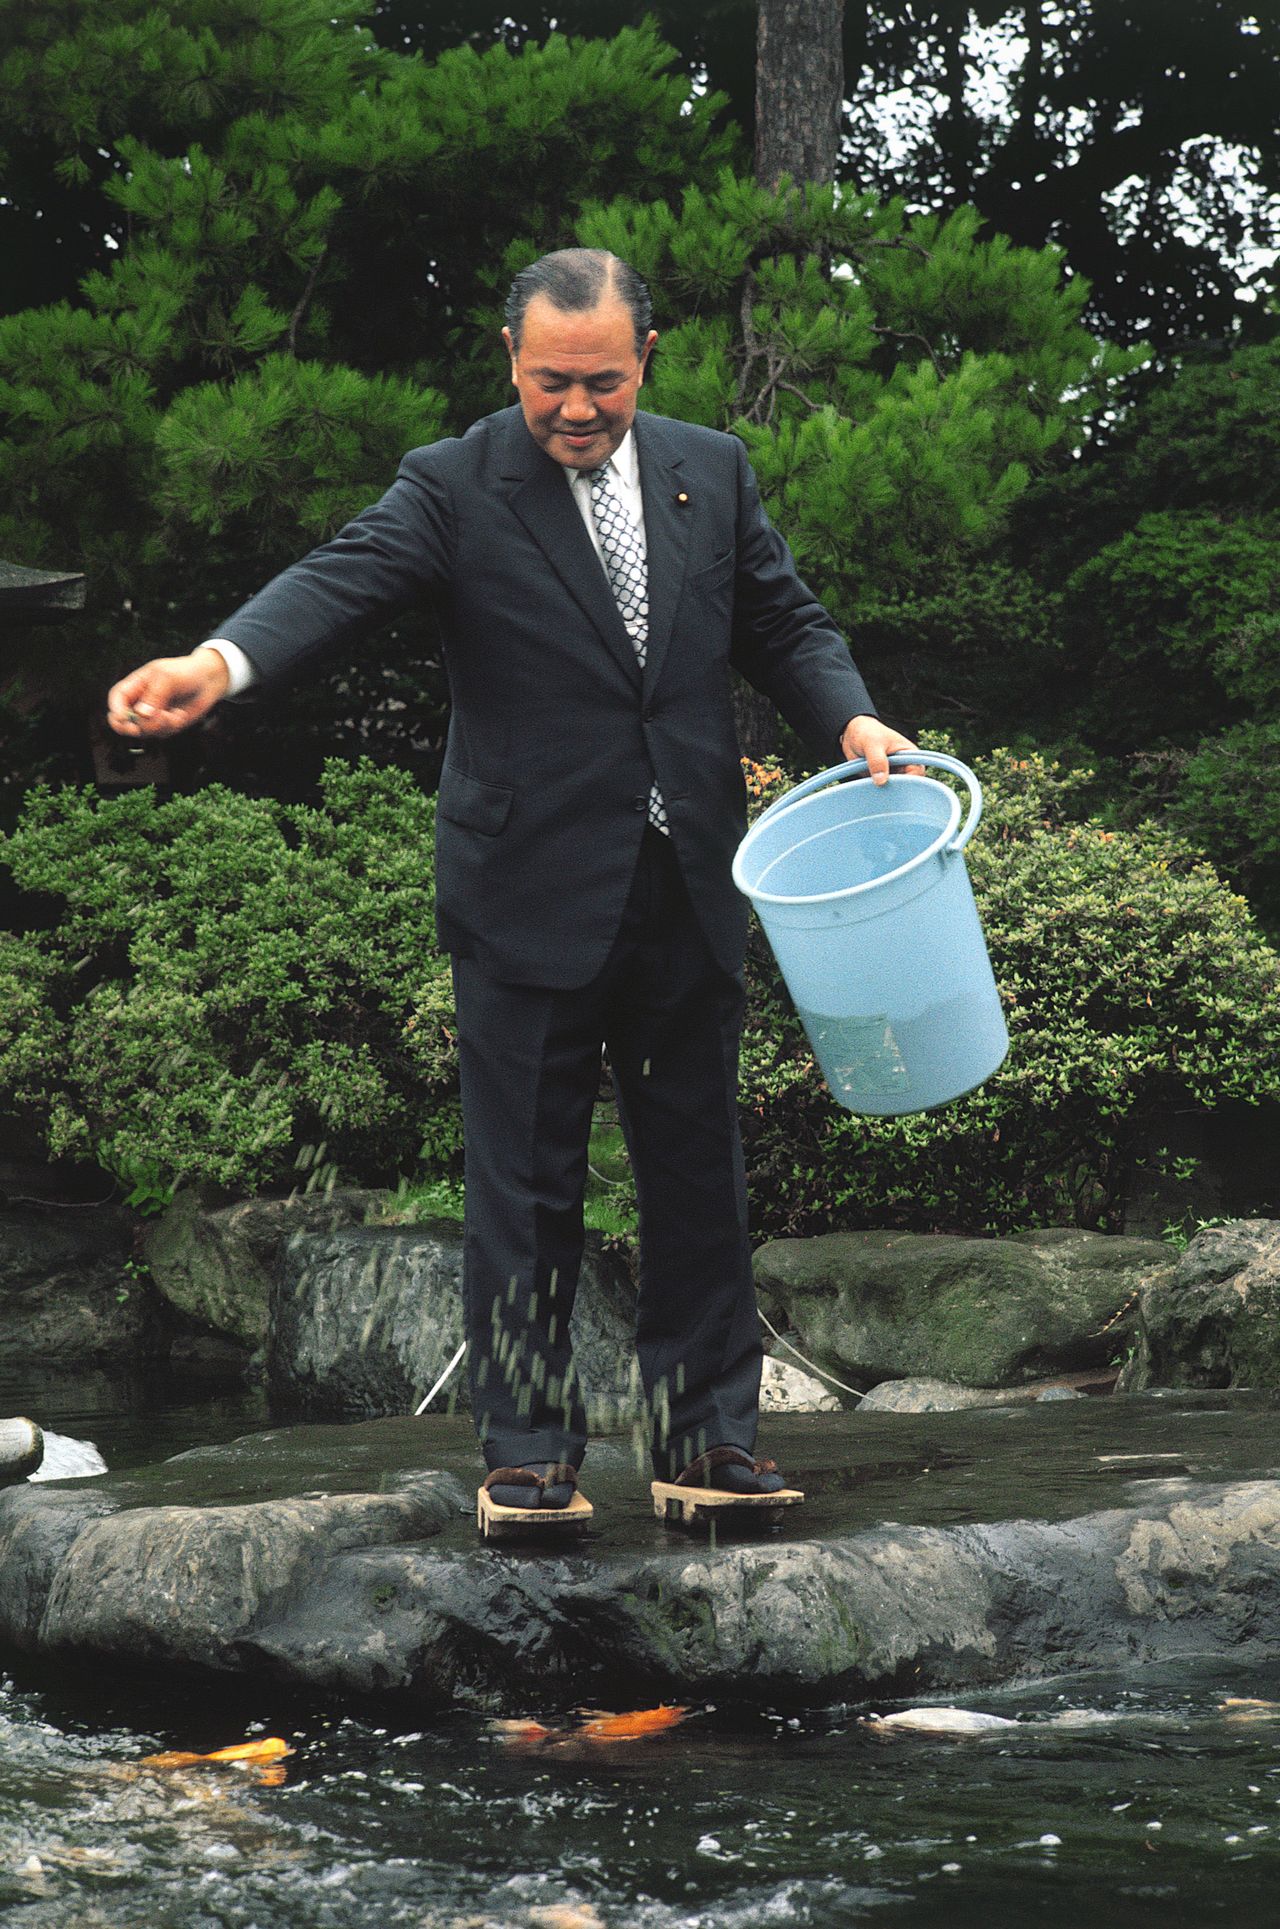 1972年7月，在當選自民黨新黨首的次日清晨，田中角榮在自家池塘邊給錦鯉餵食（時事）